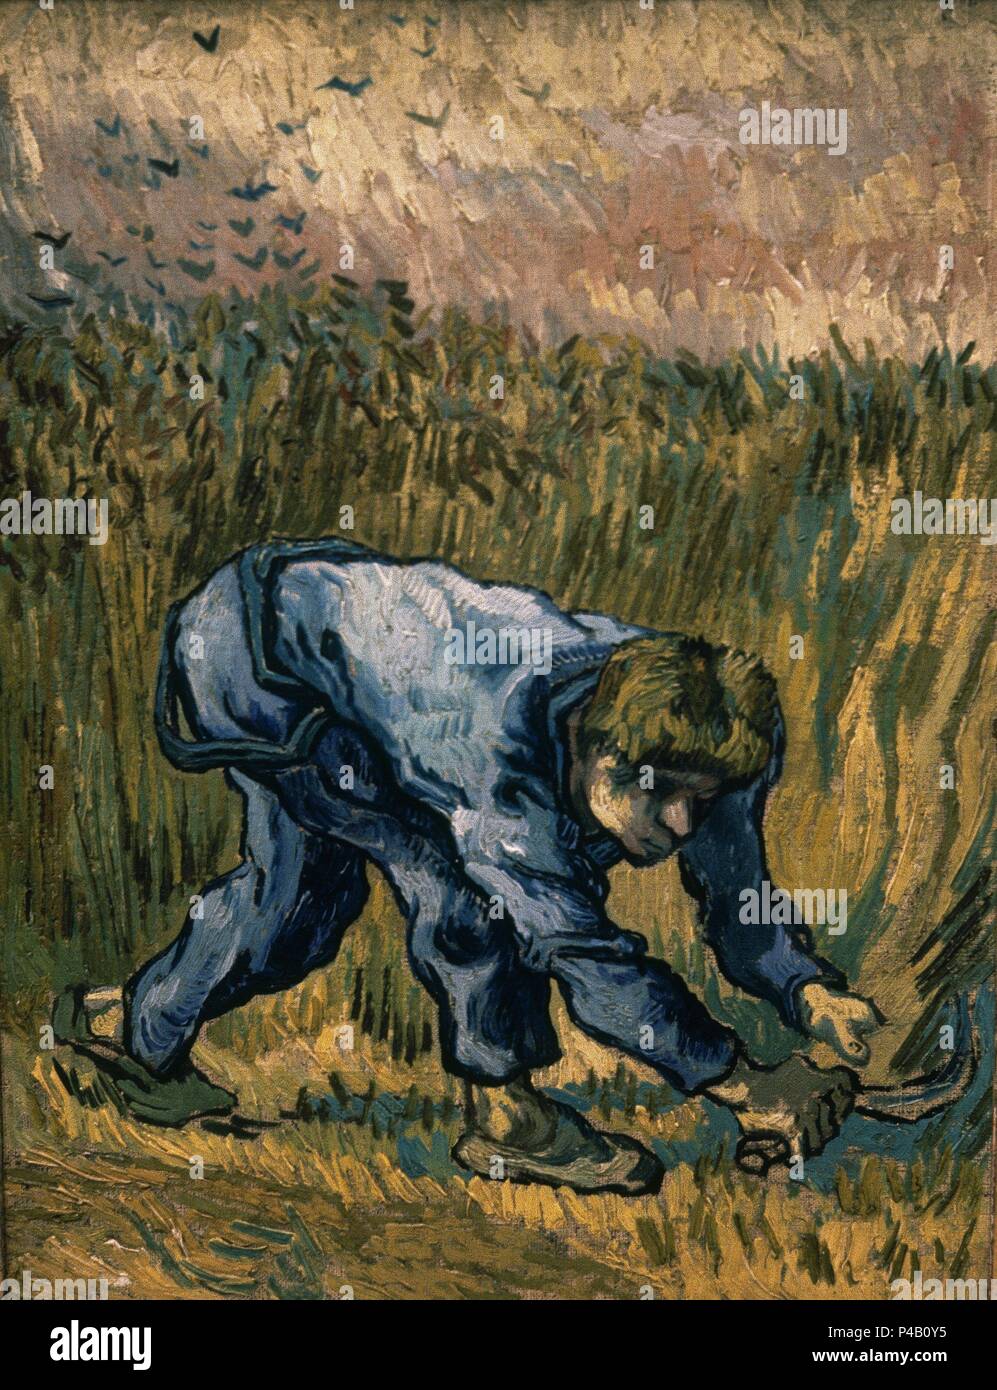 Niederländische Schule. Reaper mit Sichel (nach der Hirse). 1889. Öl auf Leinwand (44 x 33 cm). Amsterdam, Van Gogh Museum. Autor: Vincent van Gogh (1853-1890). Ort: Van Gogh Museum, Amsterdam, HOLANDA. Stockfoto